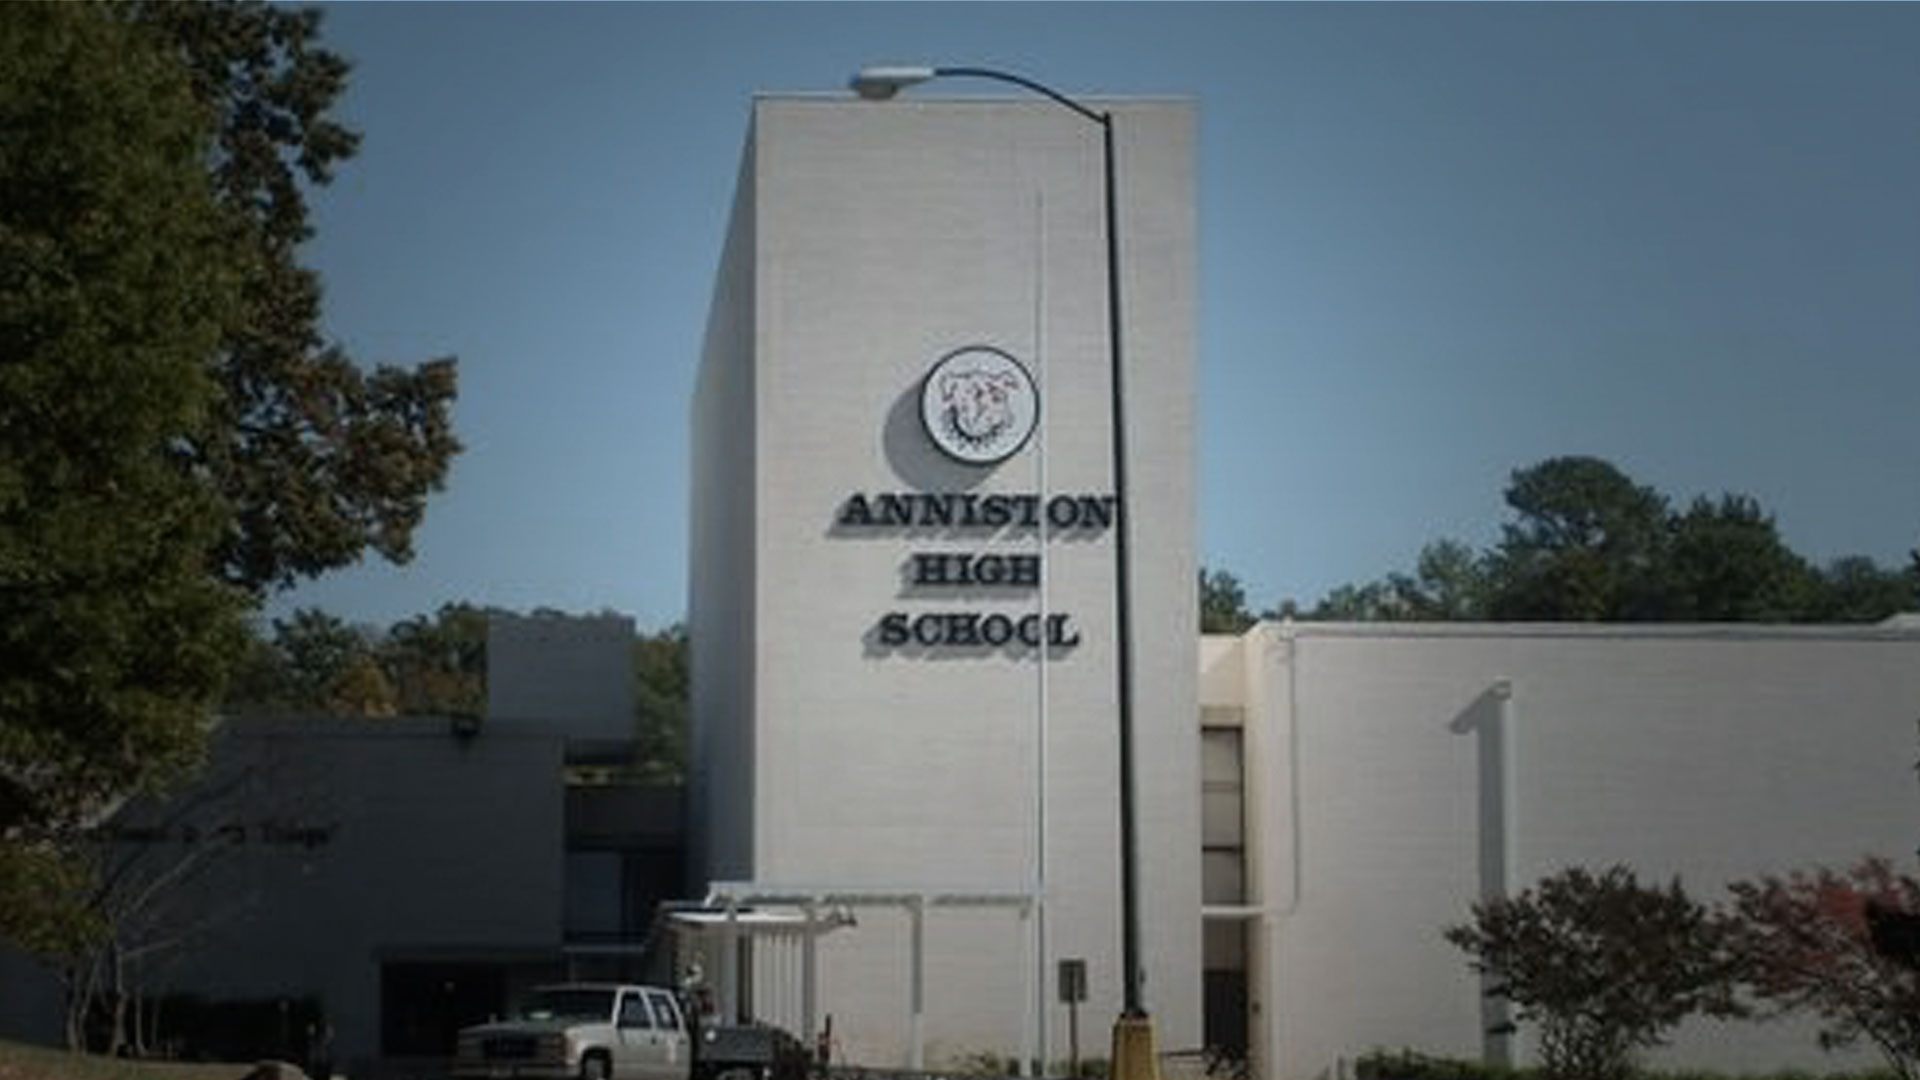 Anniston High School